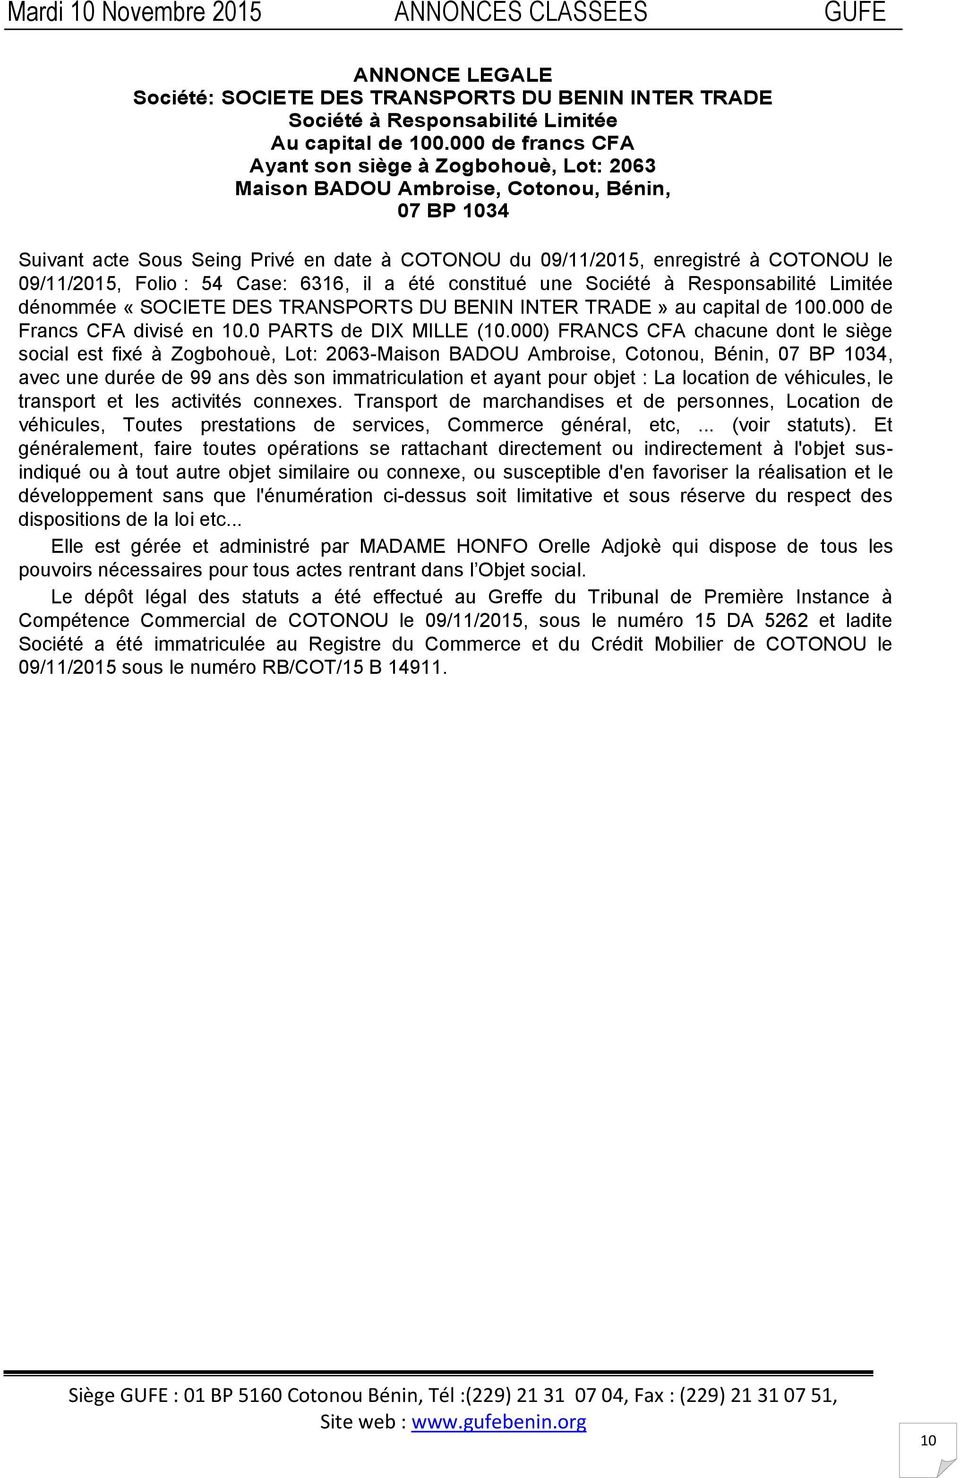 09/11/2015, Folio : 54 Case: 6316, il a été constitué une Société à Responsabilité Limitée dénommée «SOCIETE DES TRANSPORTS DU BENIN INTER TRADE» au capital de 100.000 de Francs CFA divisé en 10.